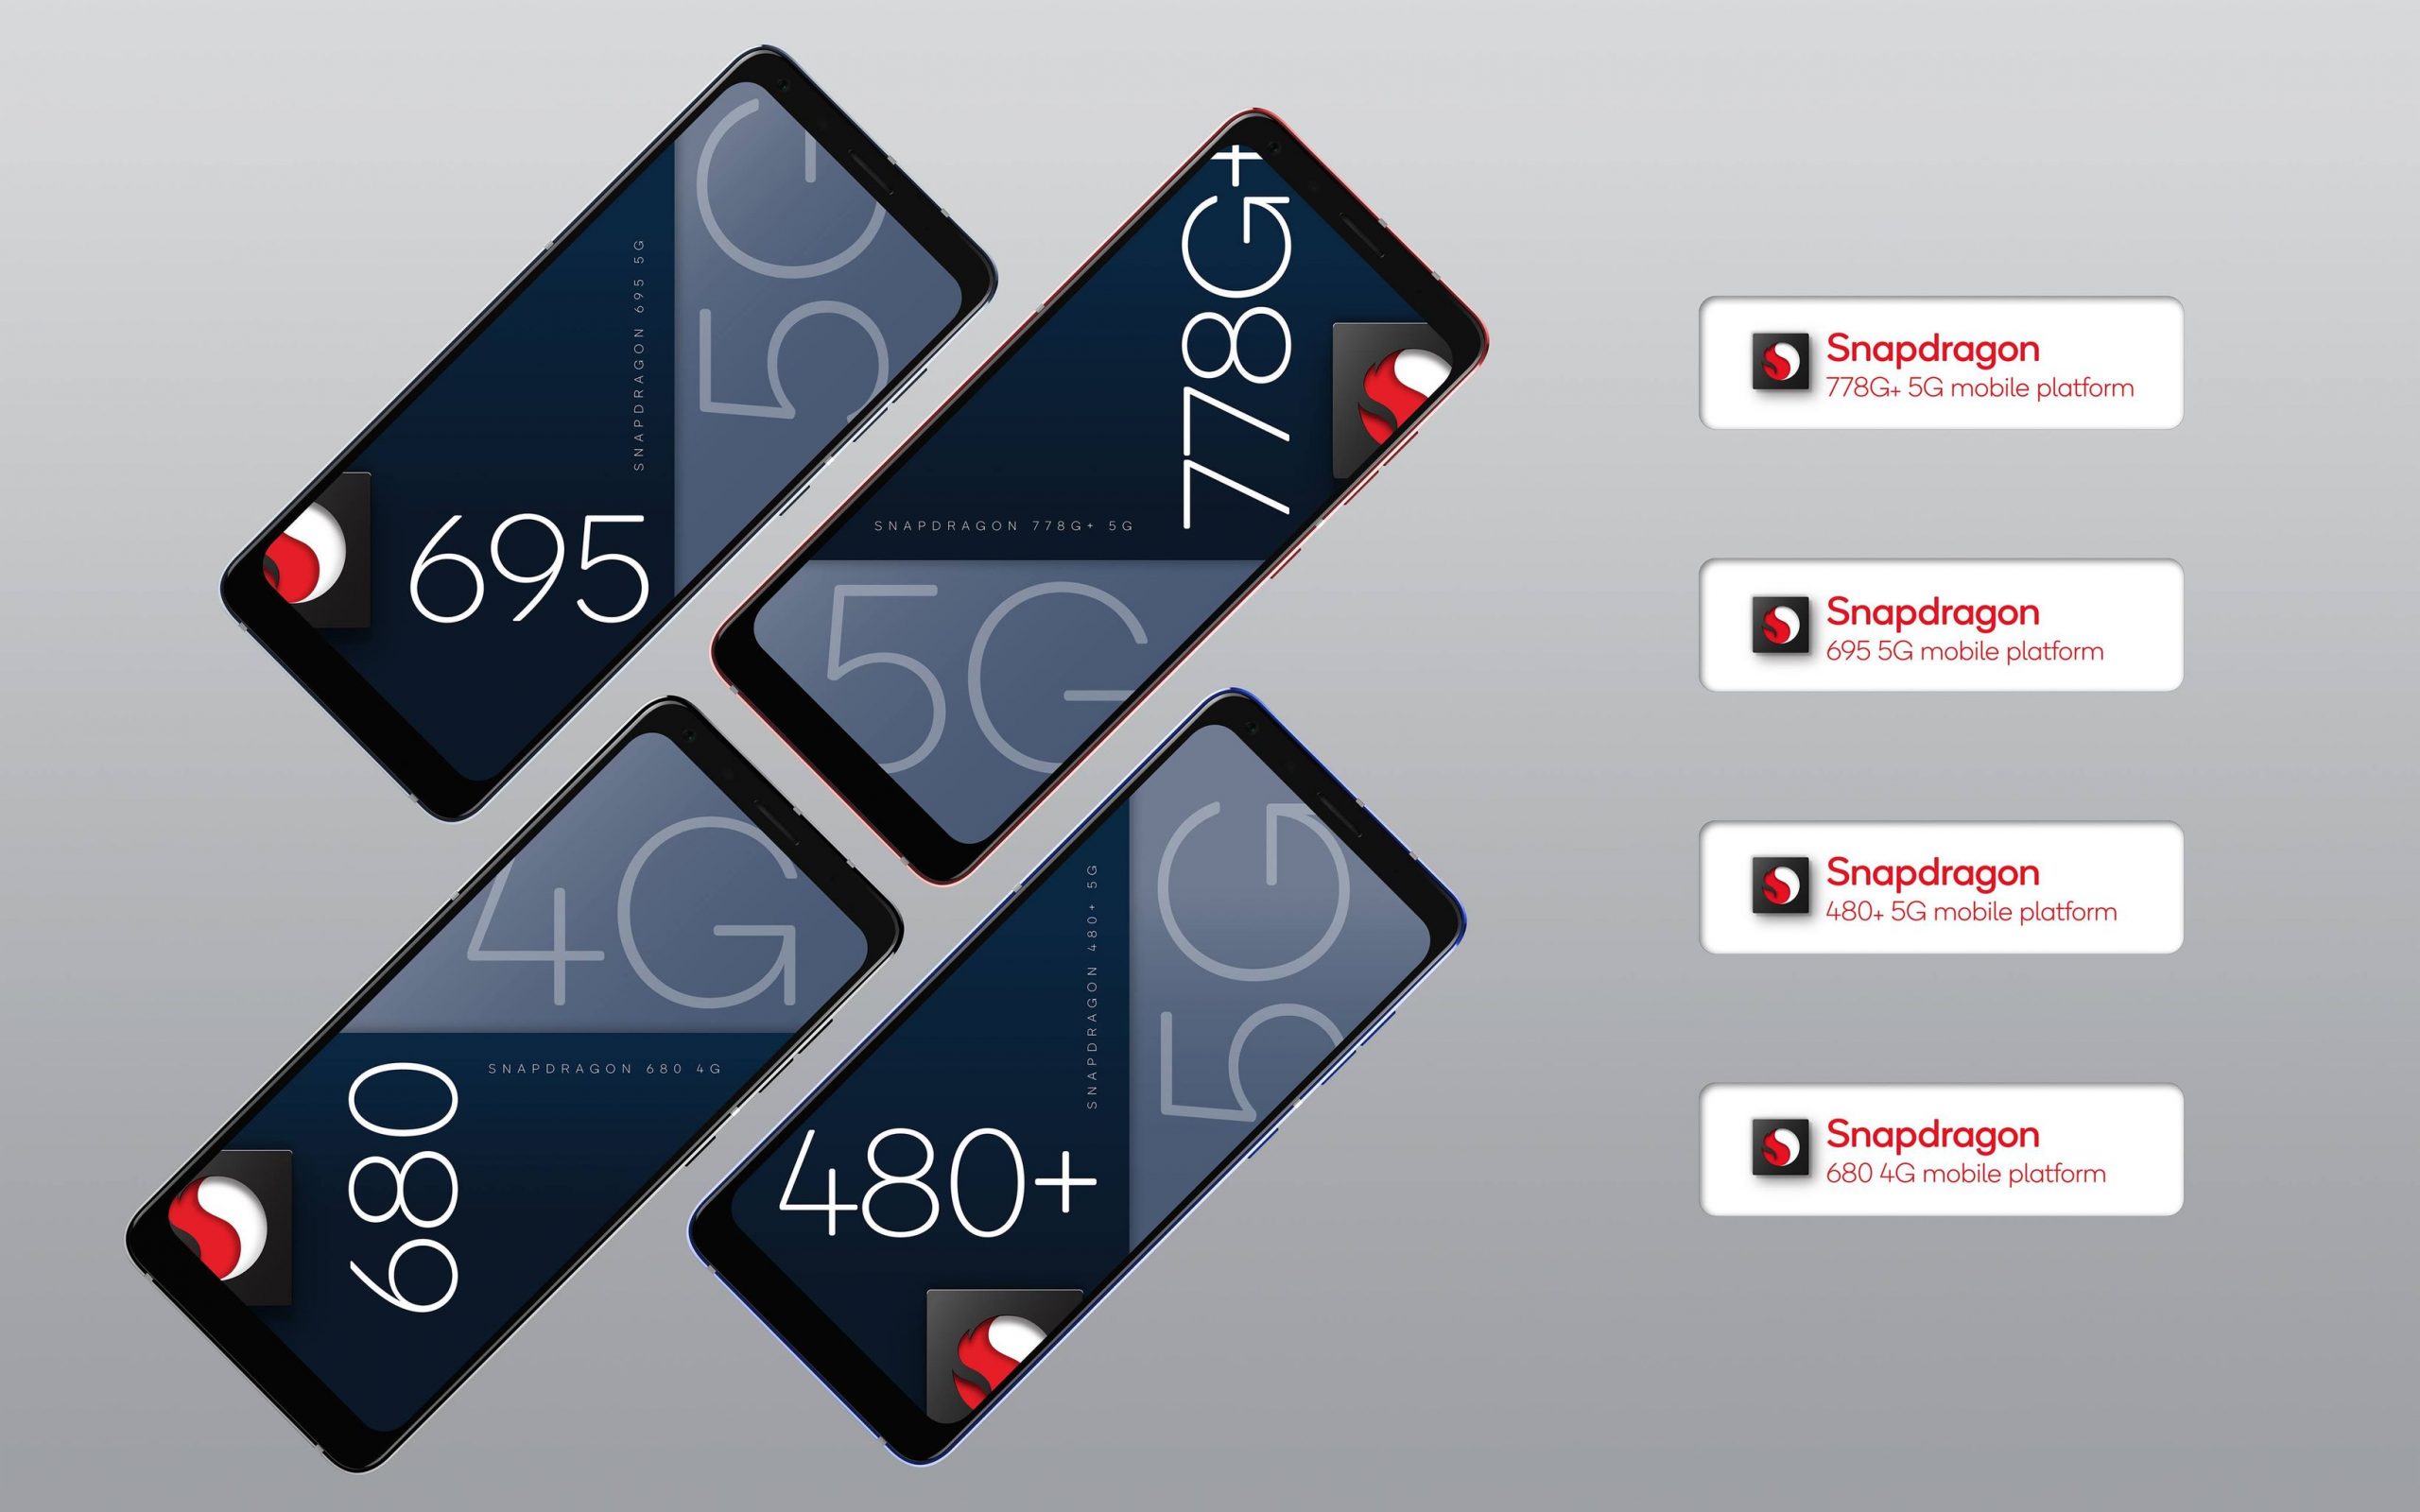 Qualcomm nâng cấp lộ trình công nghệ chip di động với Snapdragon 778G Plus 5G, 695 5G, 480 Plus 5G và 680 4G